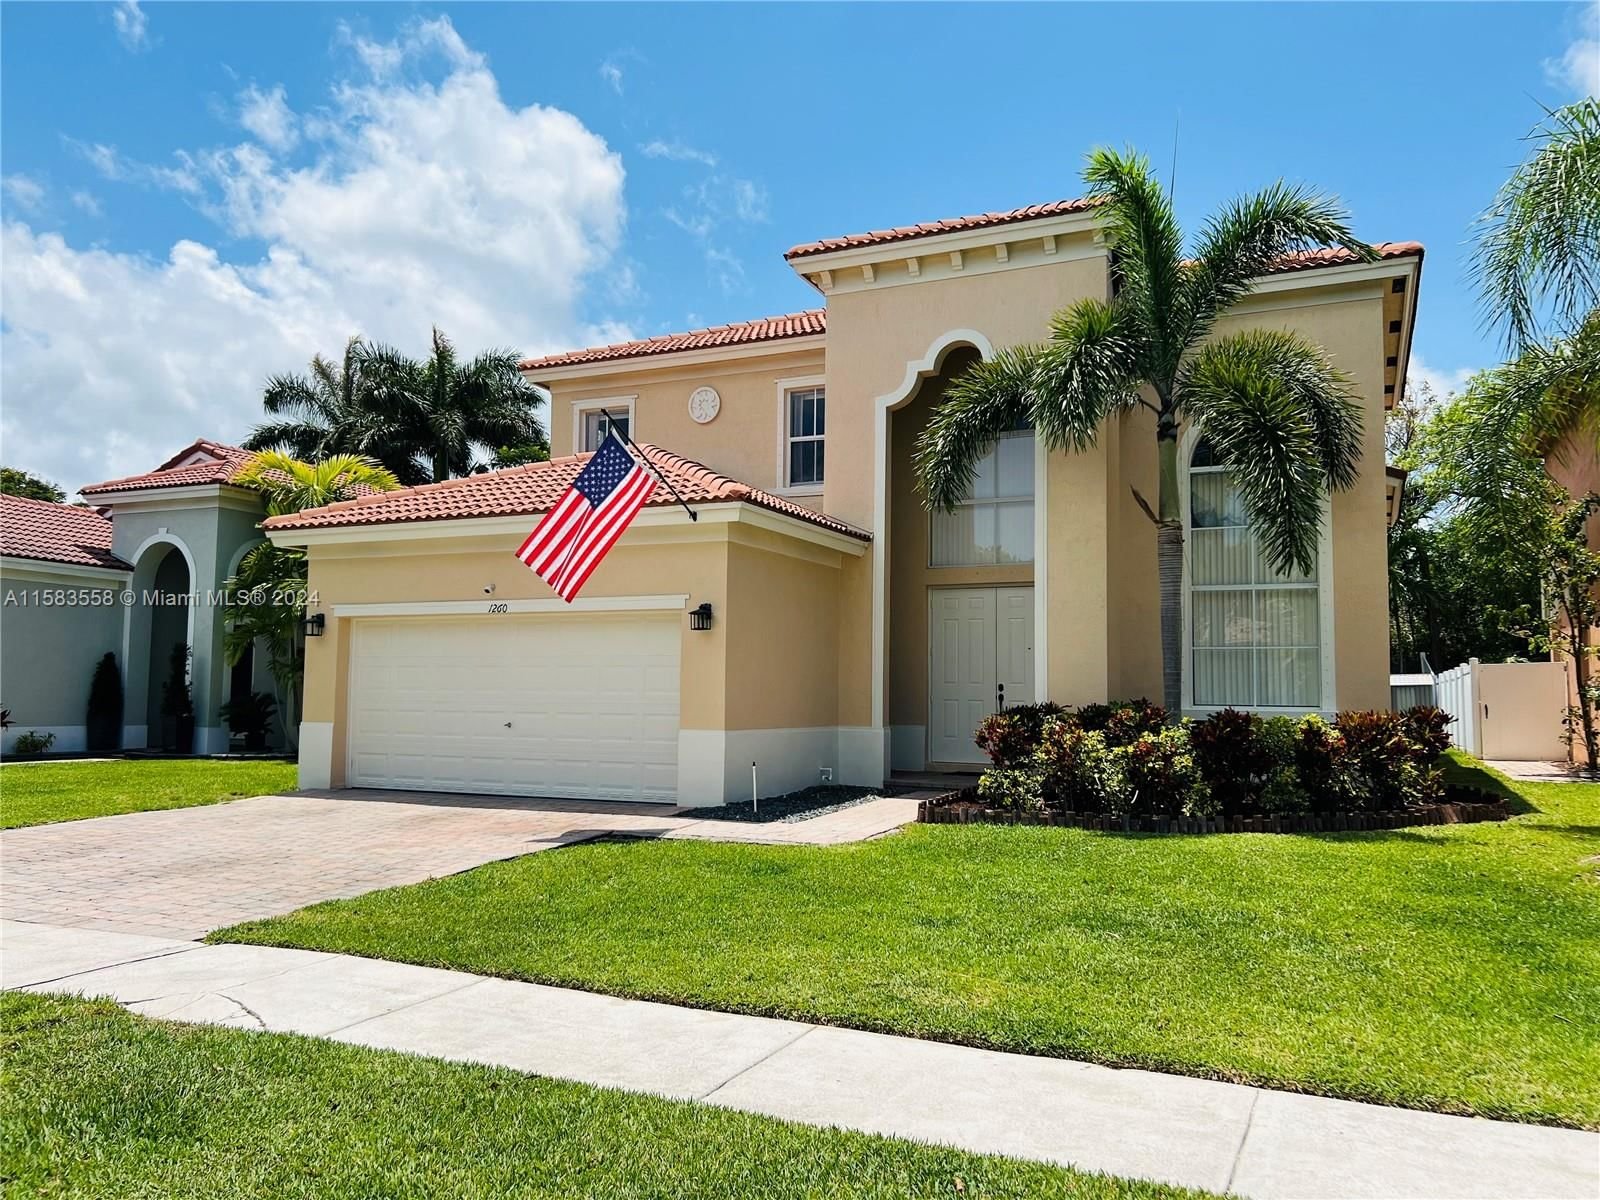 Real estate property located at 1260 37th Ave, Miami-Dade County, PORTOFINO OAKS, Homestead, FL